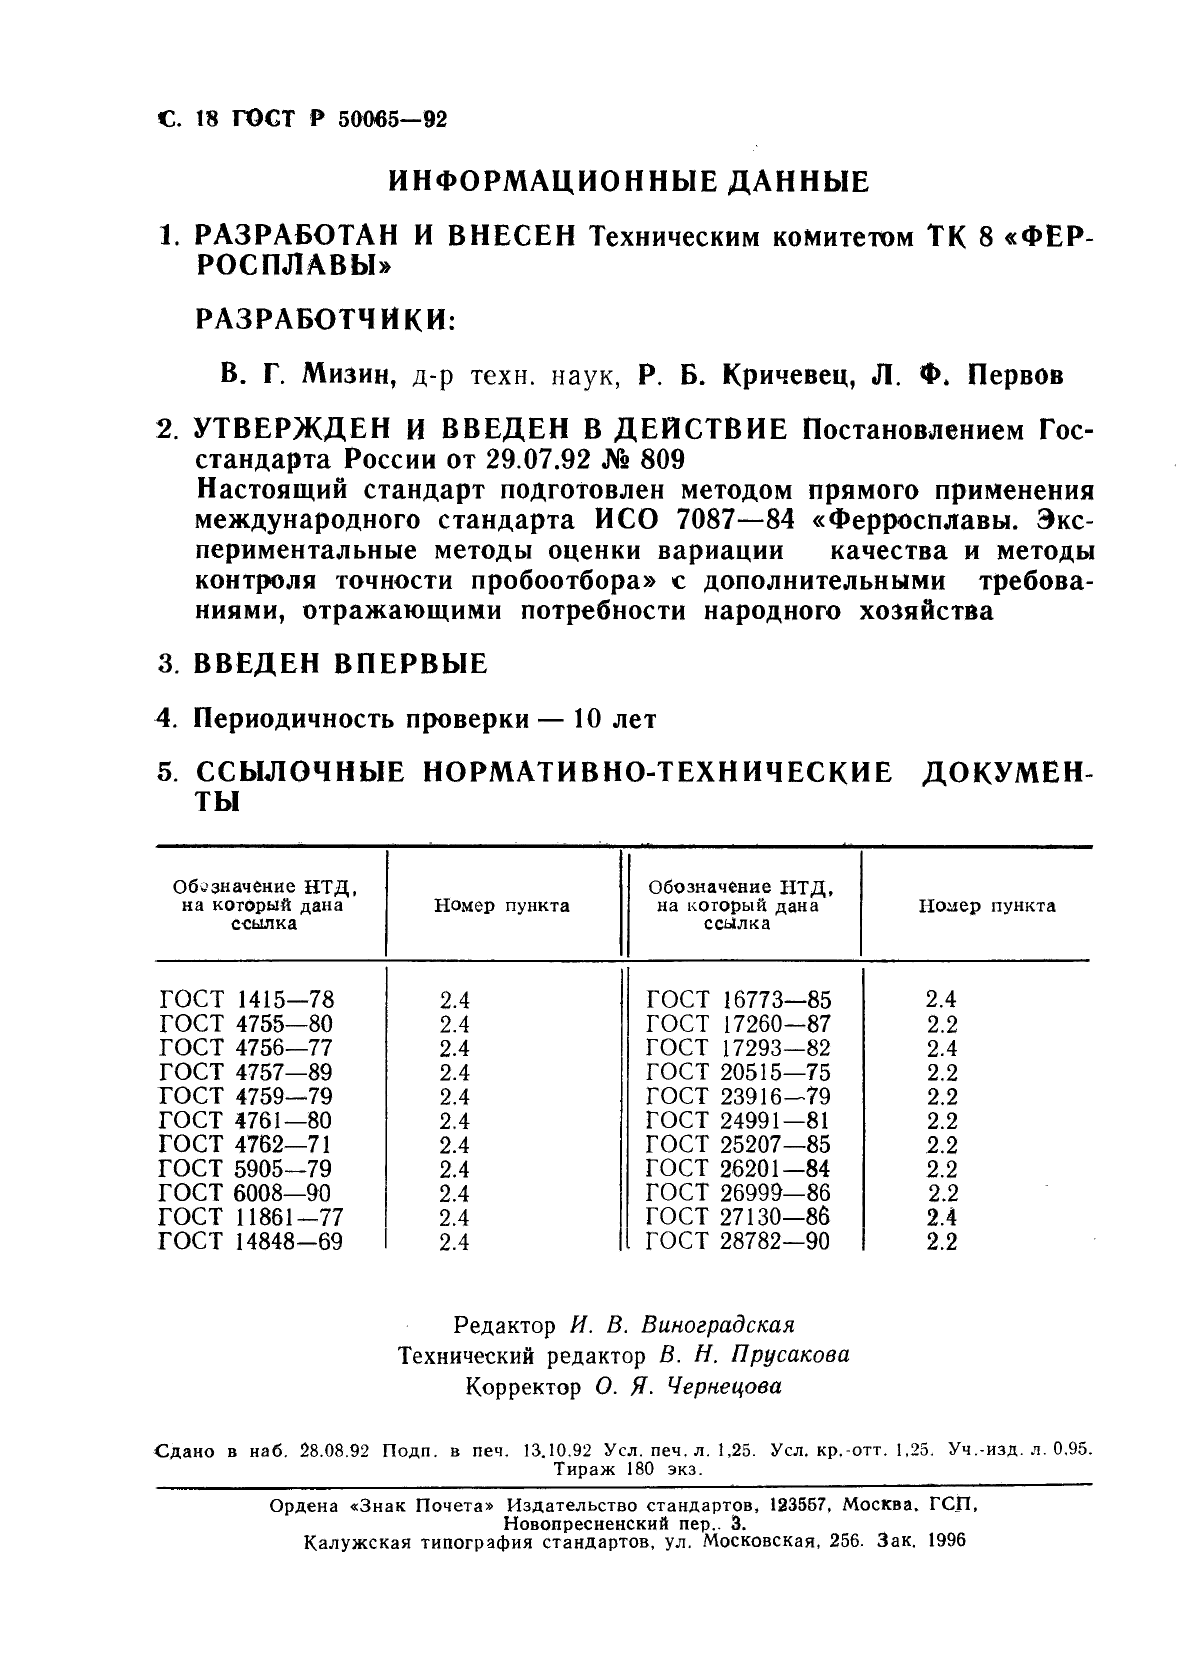 ГОСТ Р 50065-92 Ферросплавы. Экспериментальные методы оценки вариации качества и методы контроля точности отбора проб (фото 19 из 19)